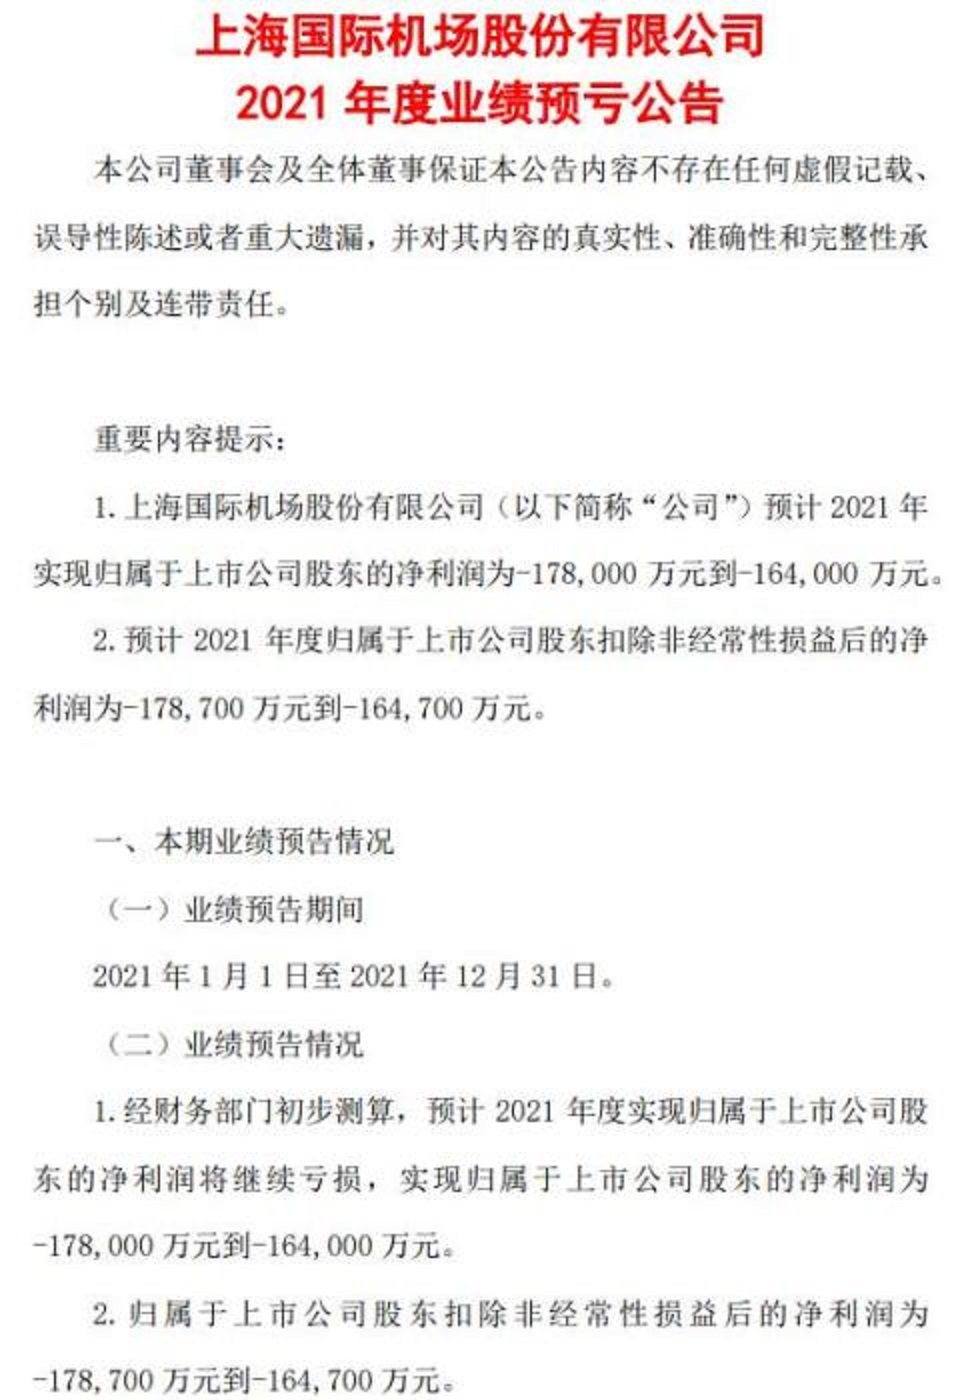 上海機場24日收盤後發布2021年業績預虧公告。公告截圖